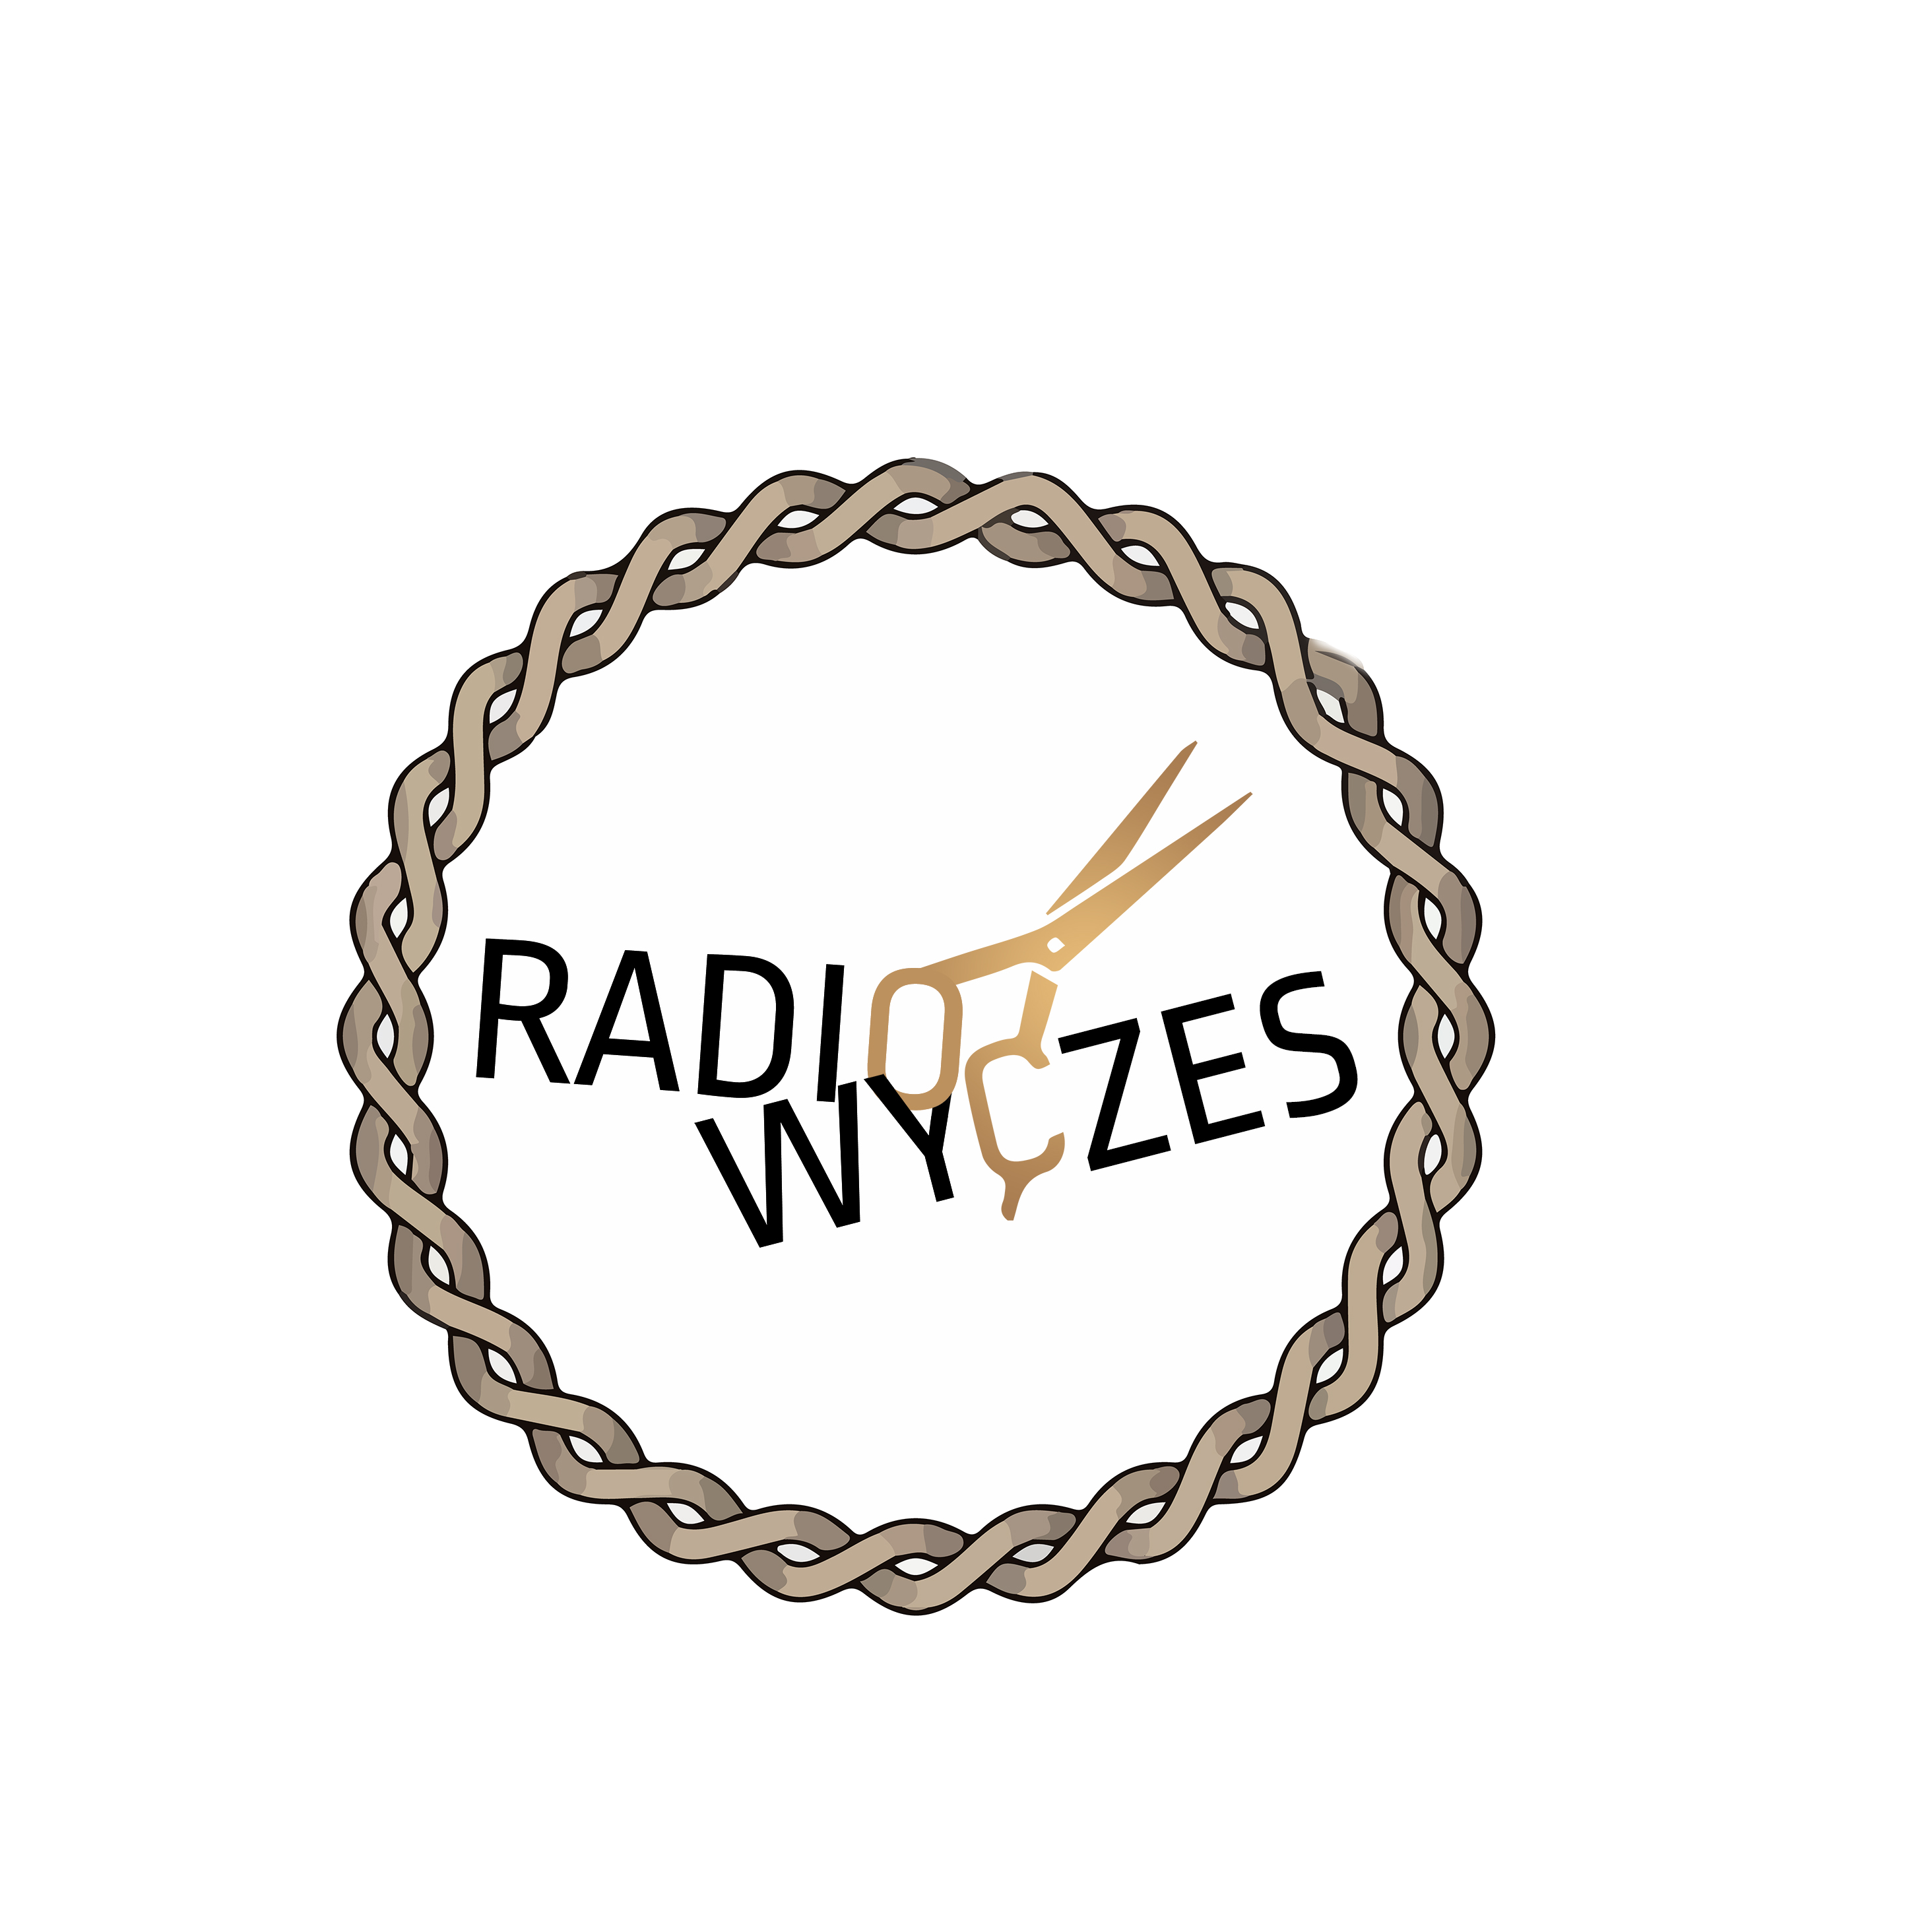 Radio Wyczes